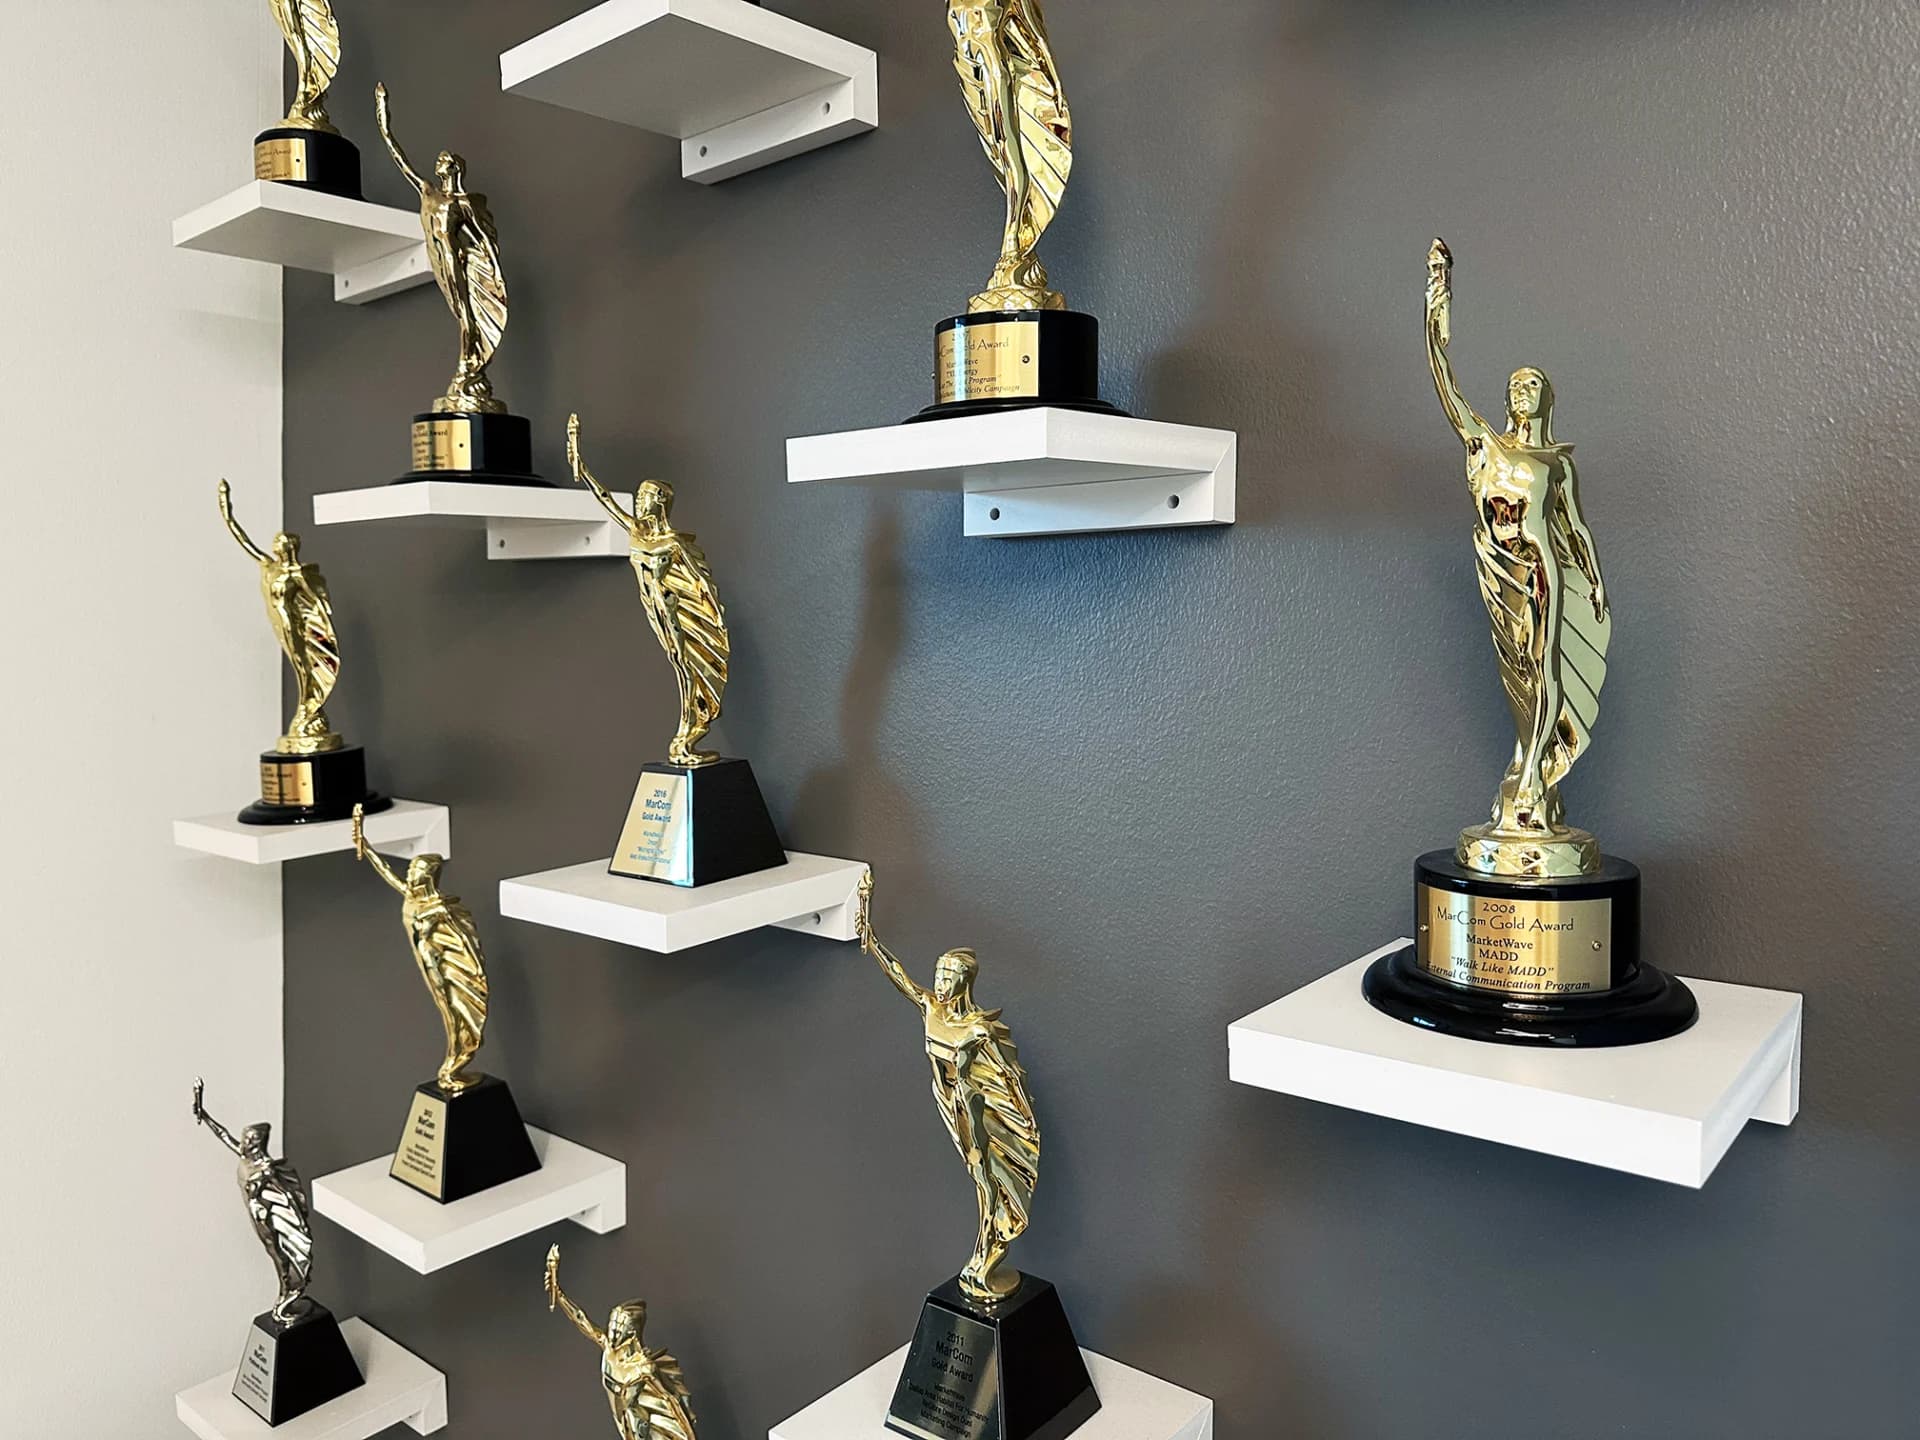 A shelf of awards